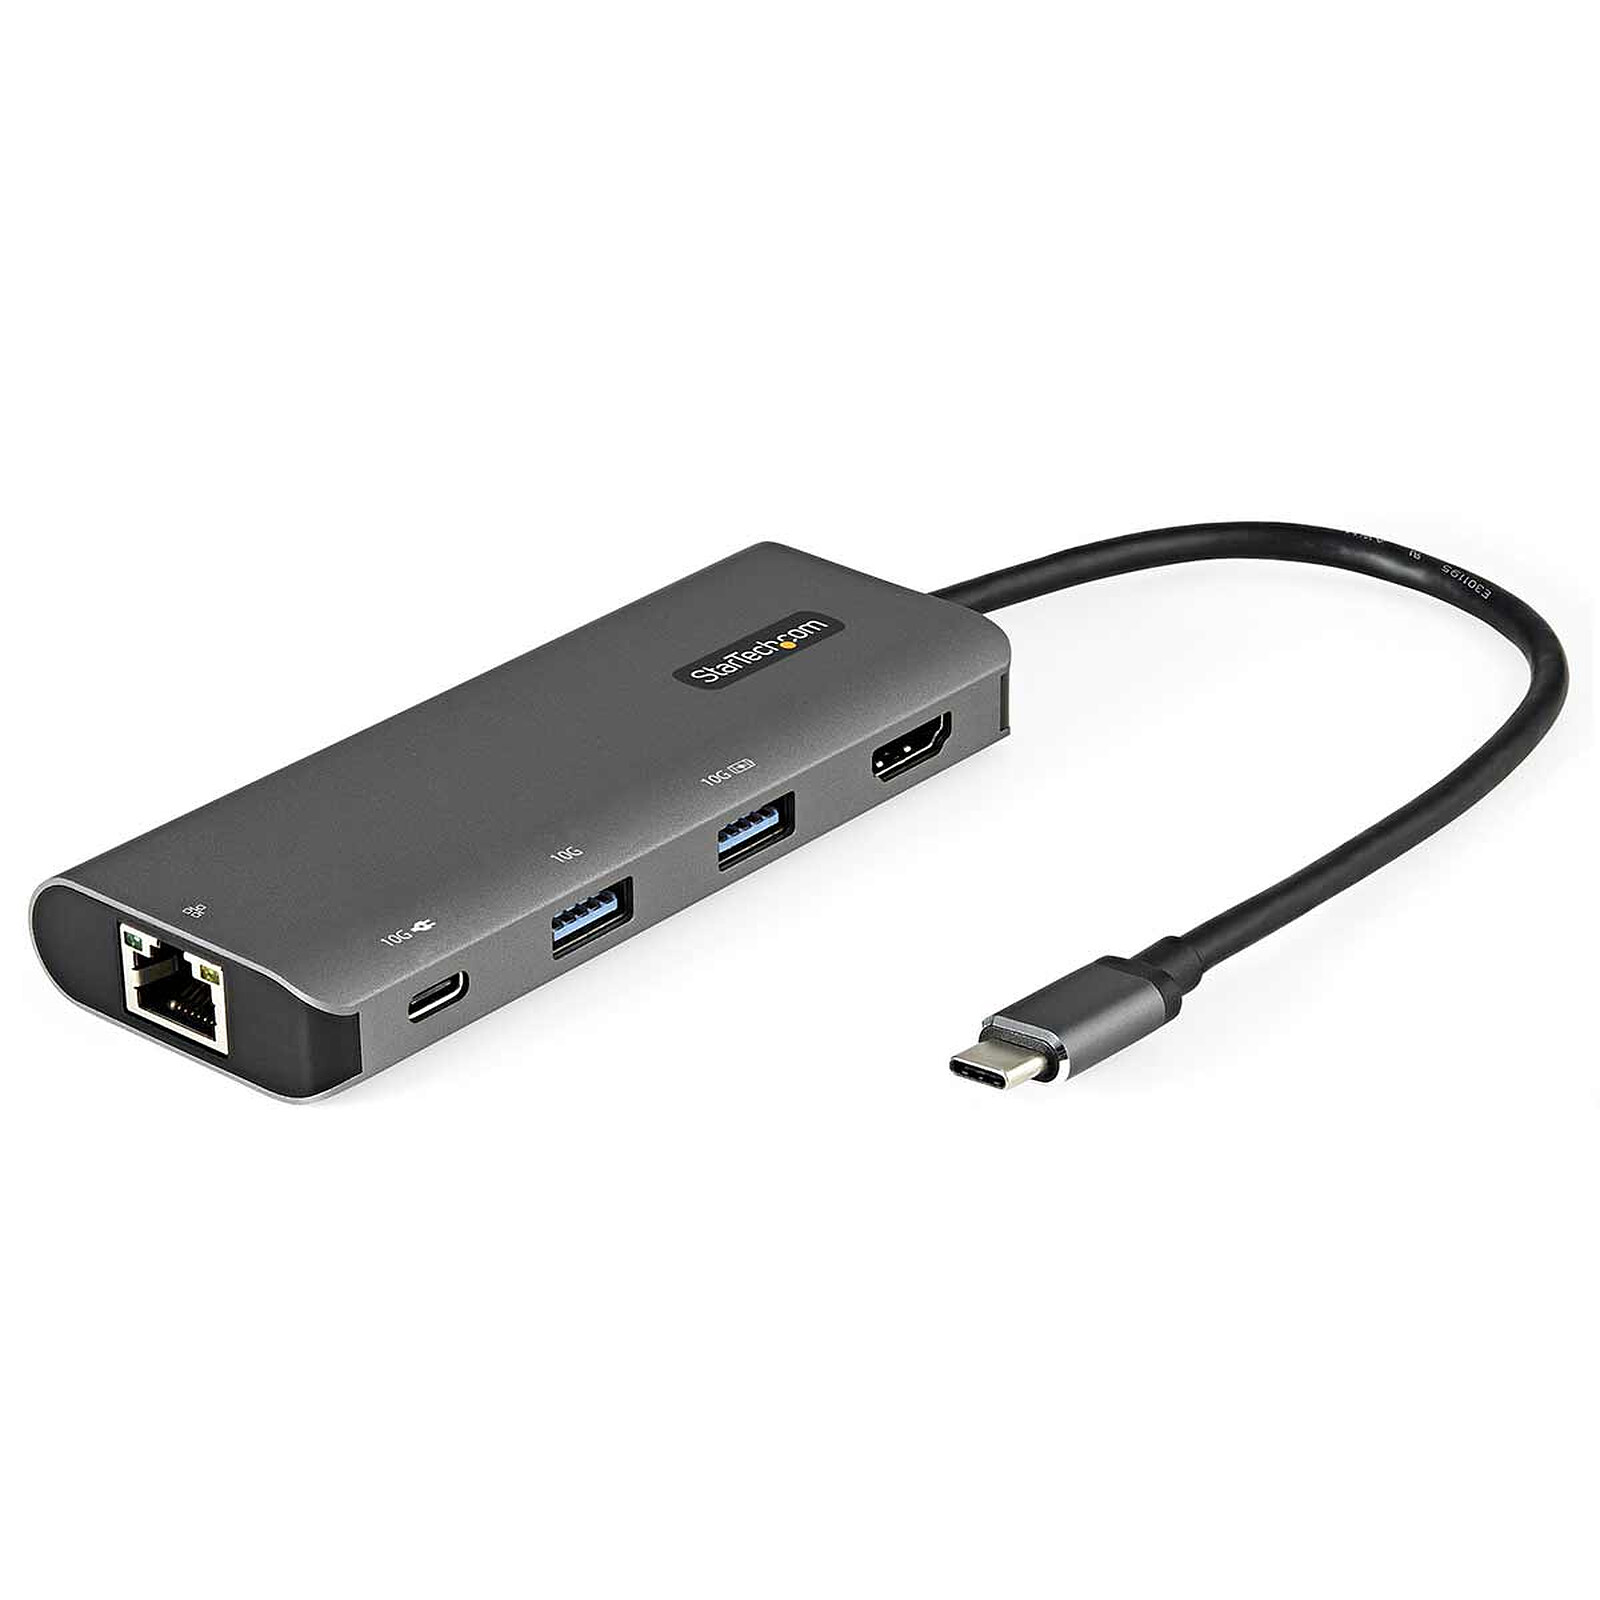 Hub adaptador multipuerto USB C a HDMI / USB 3.0 / USB C